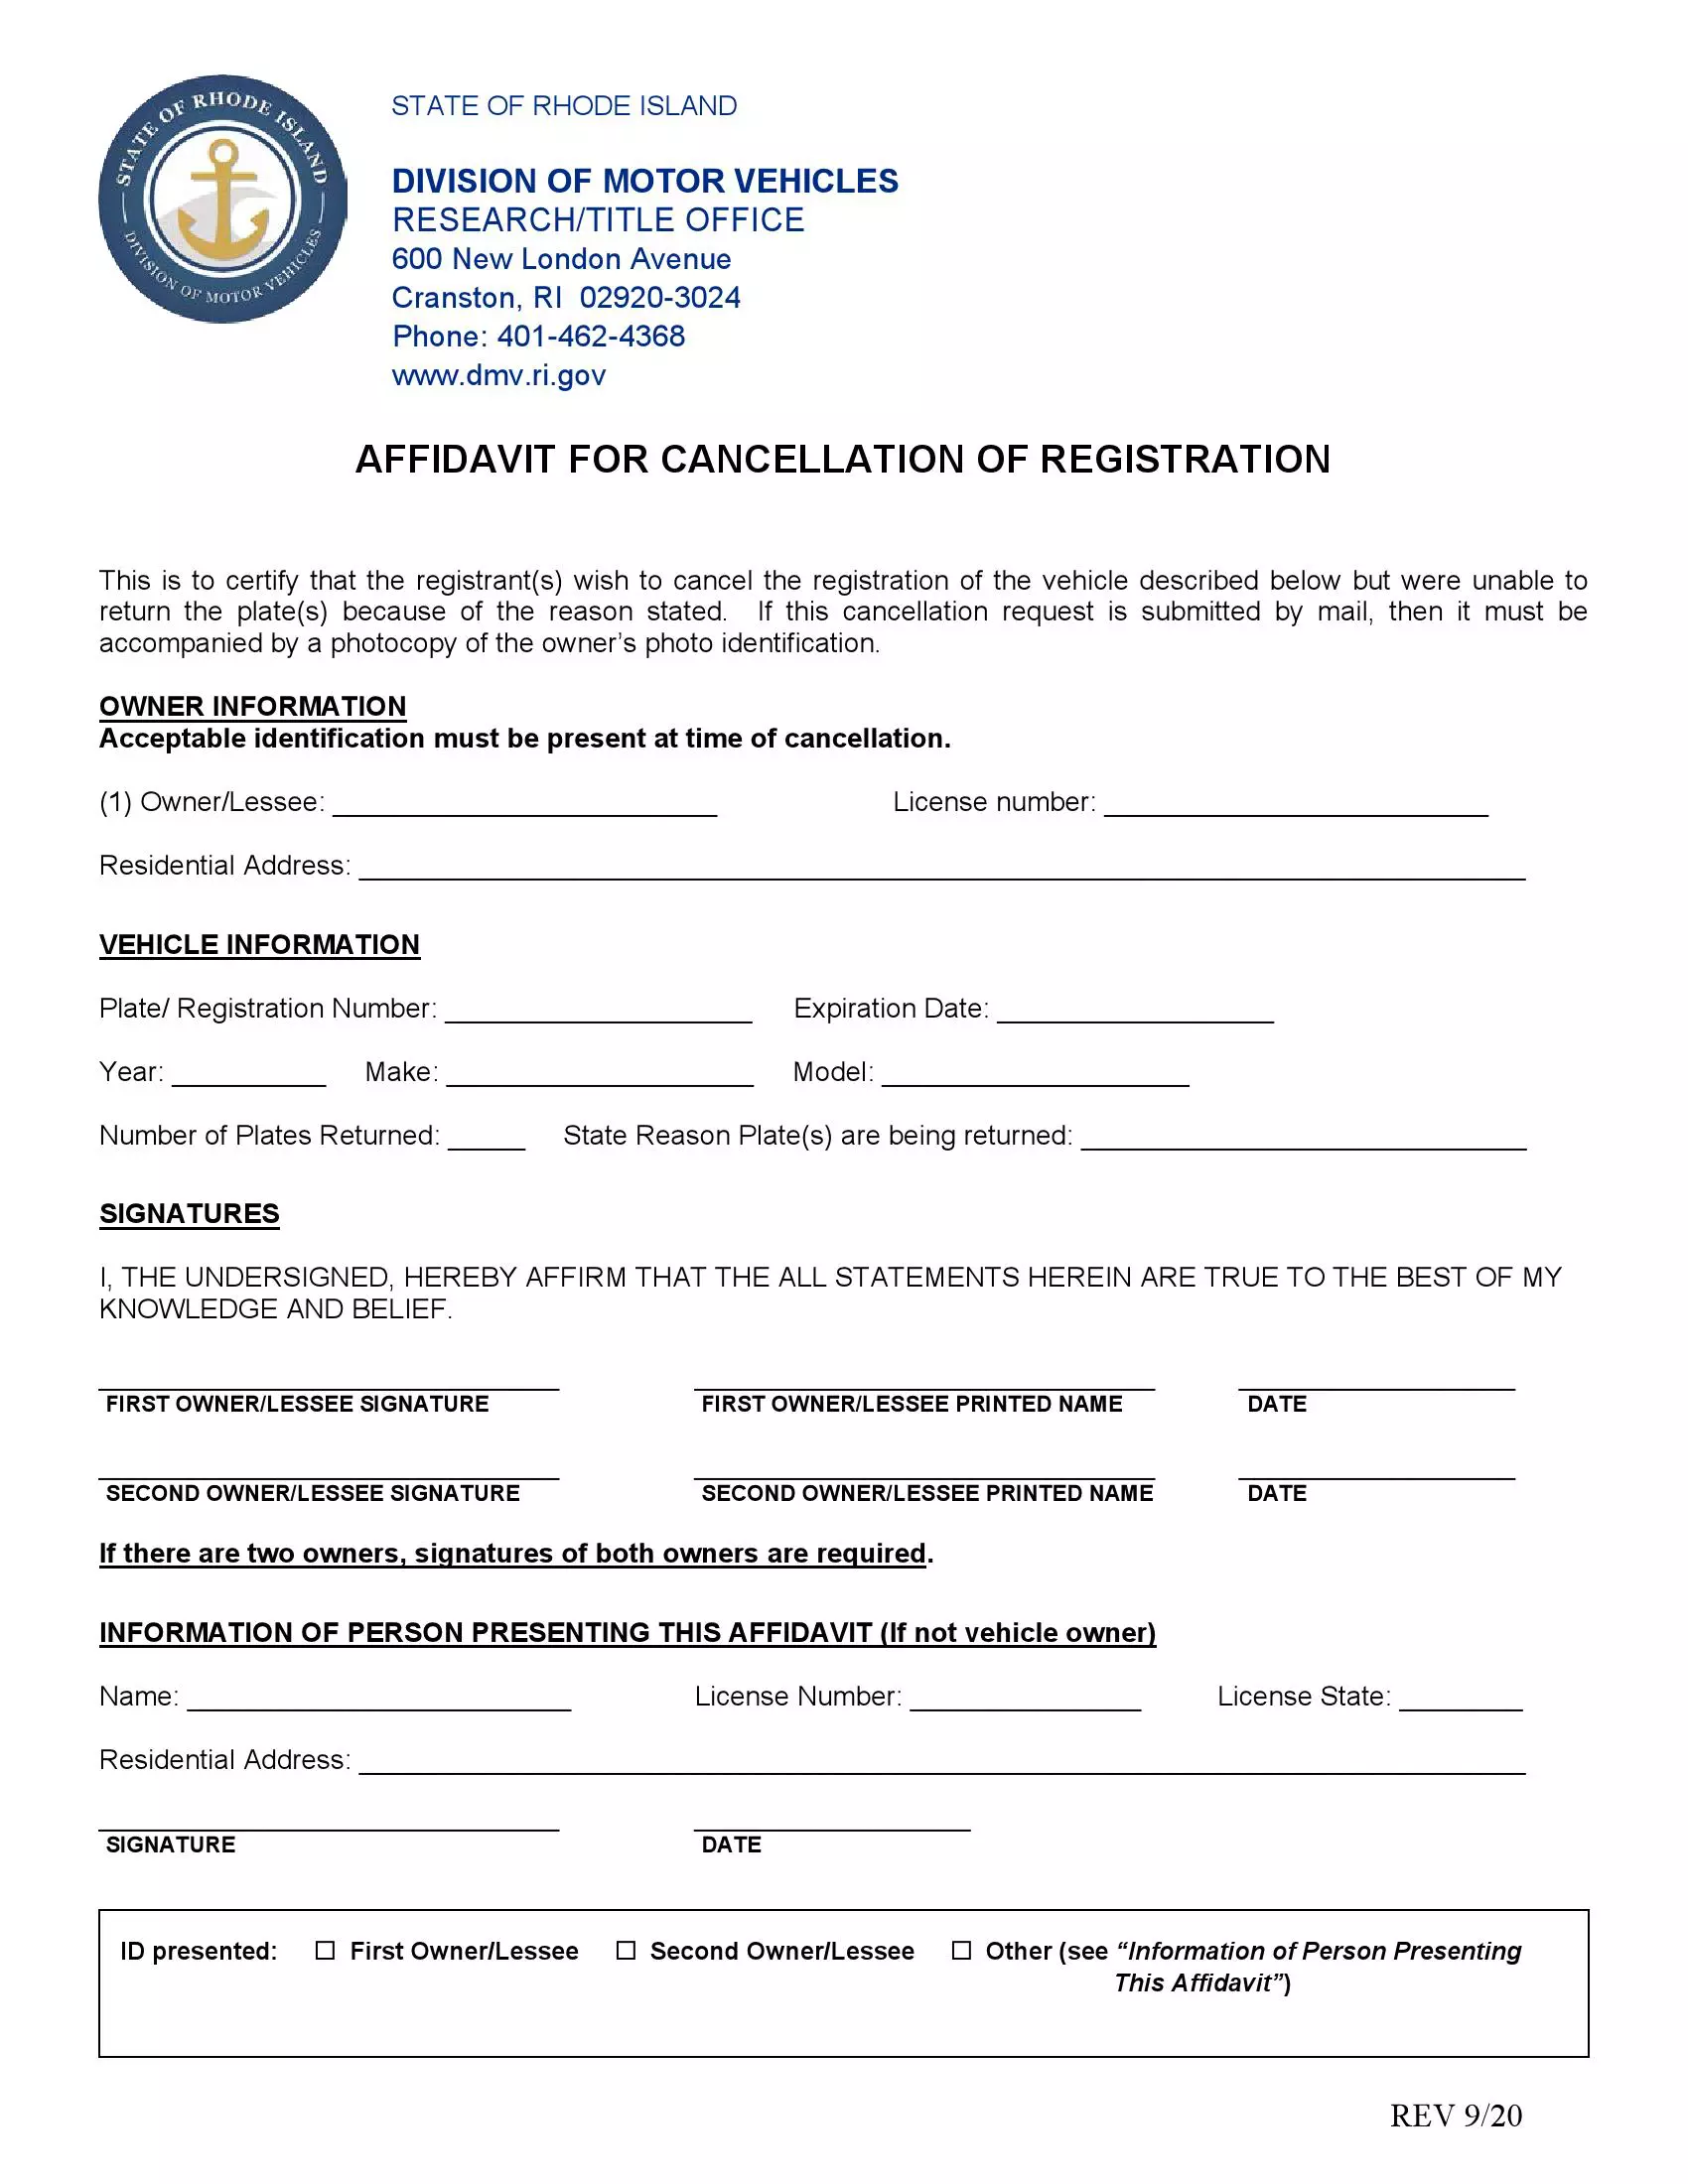 Affidavit for Cancellation of Registration